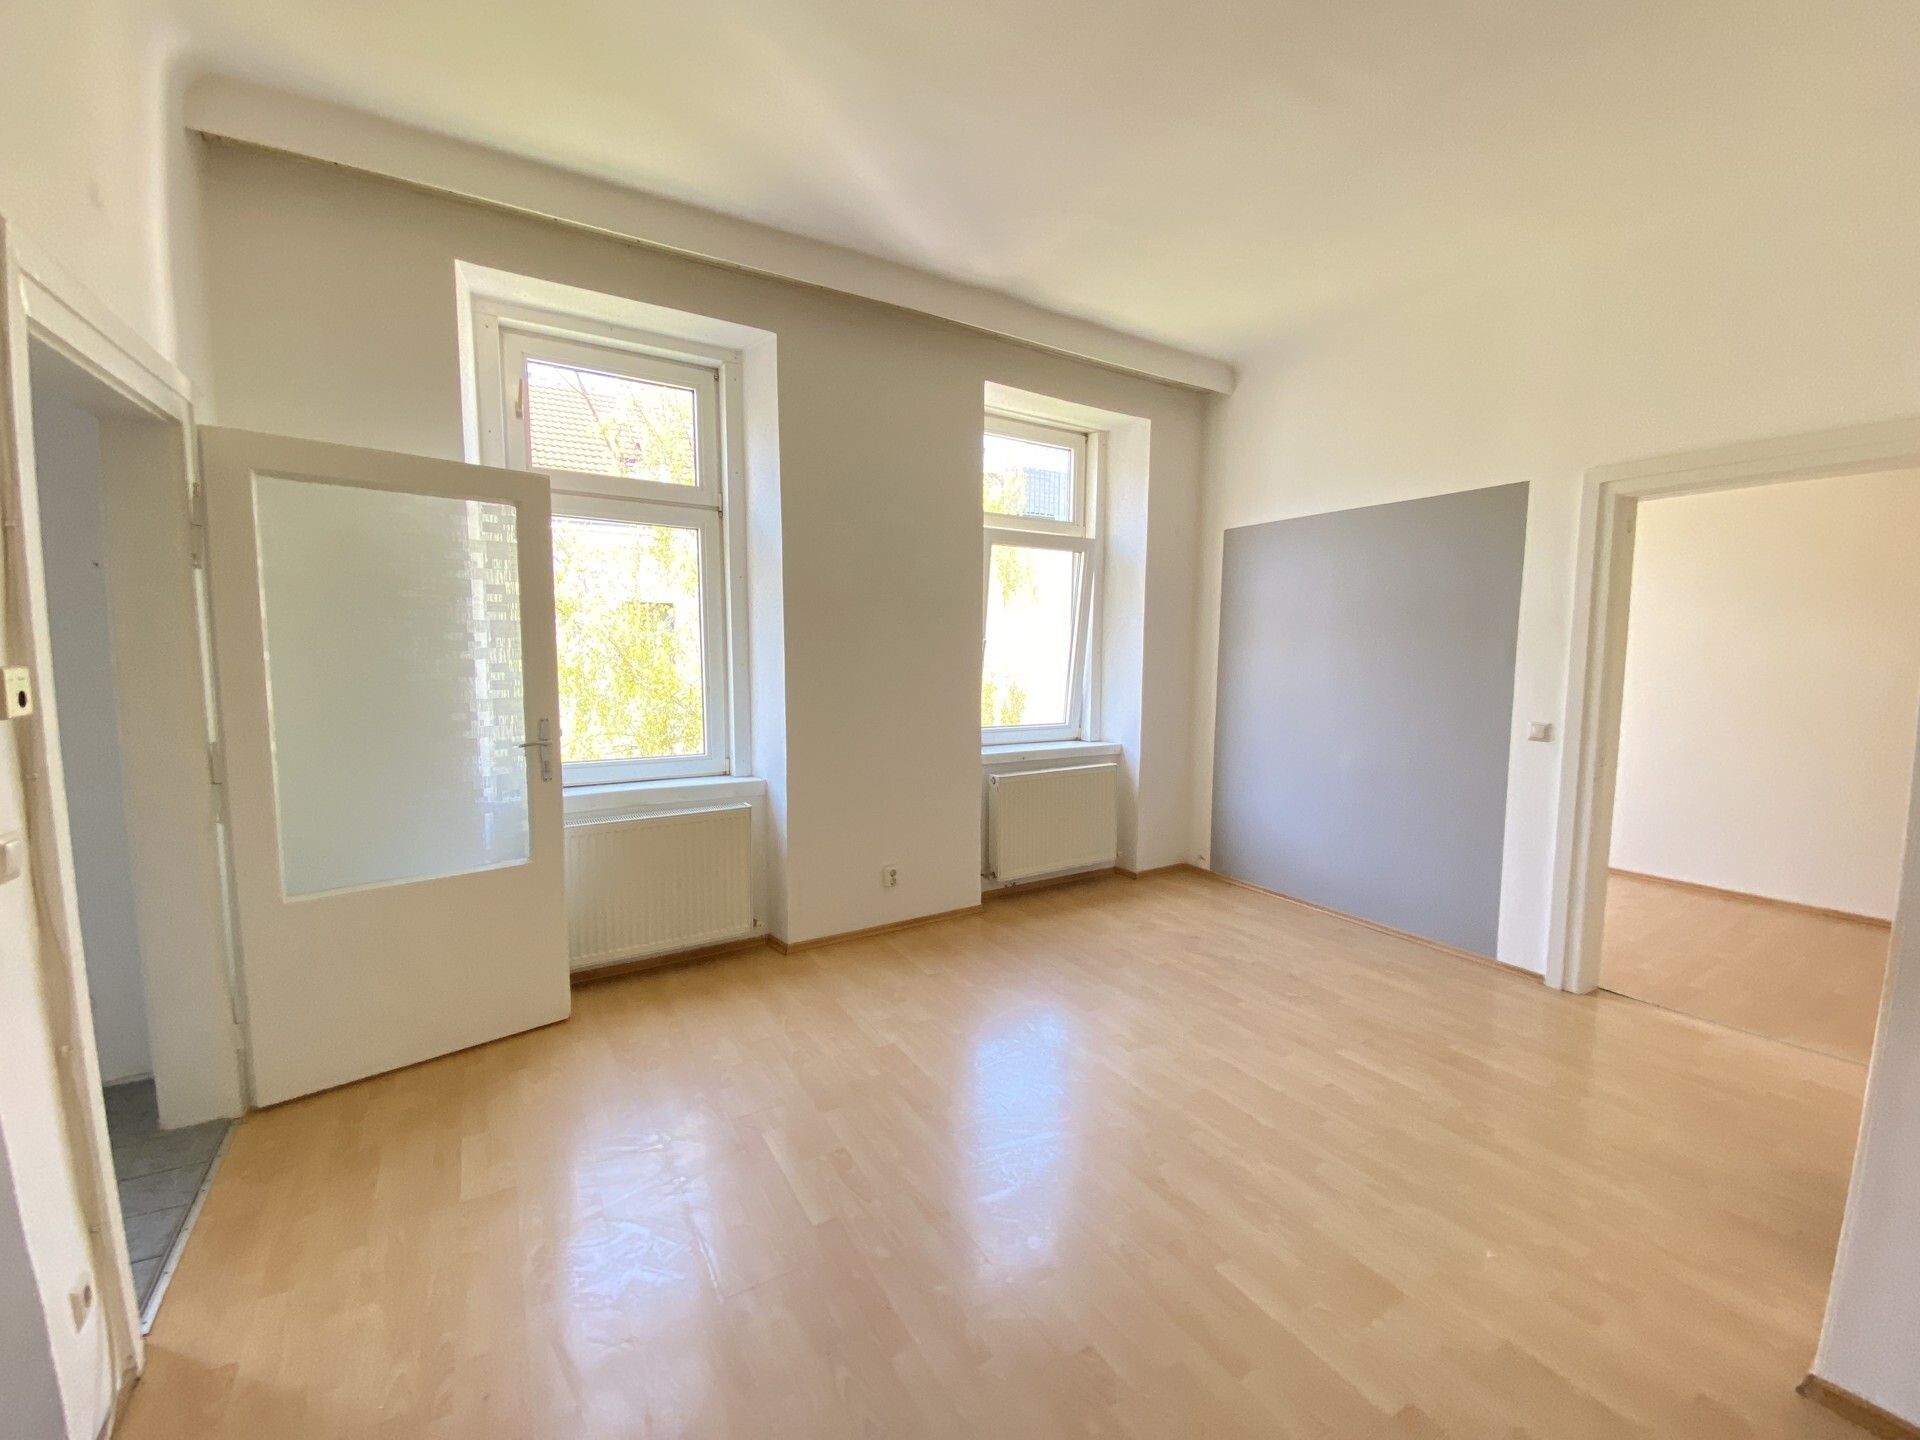 Altbaujuwel: 2-Zimmer Altbauwohnung mit Balkonoption - zu kaufen in 1160 Wien